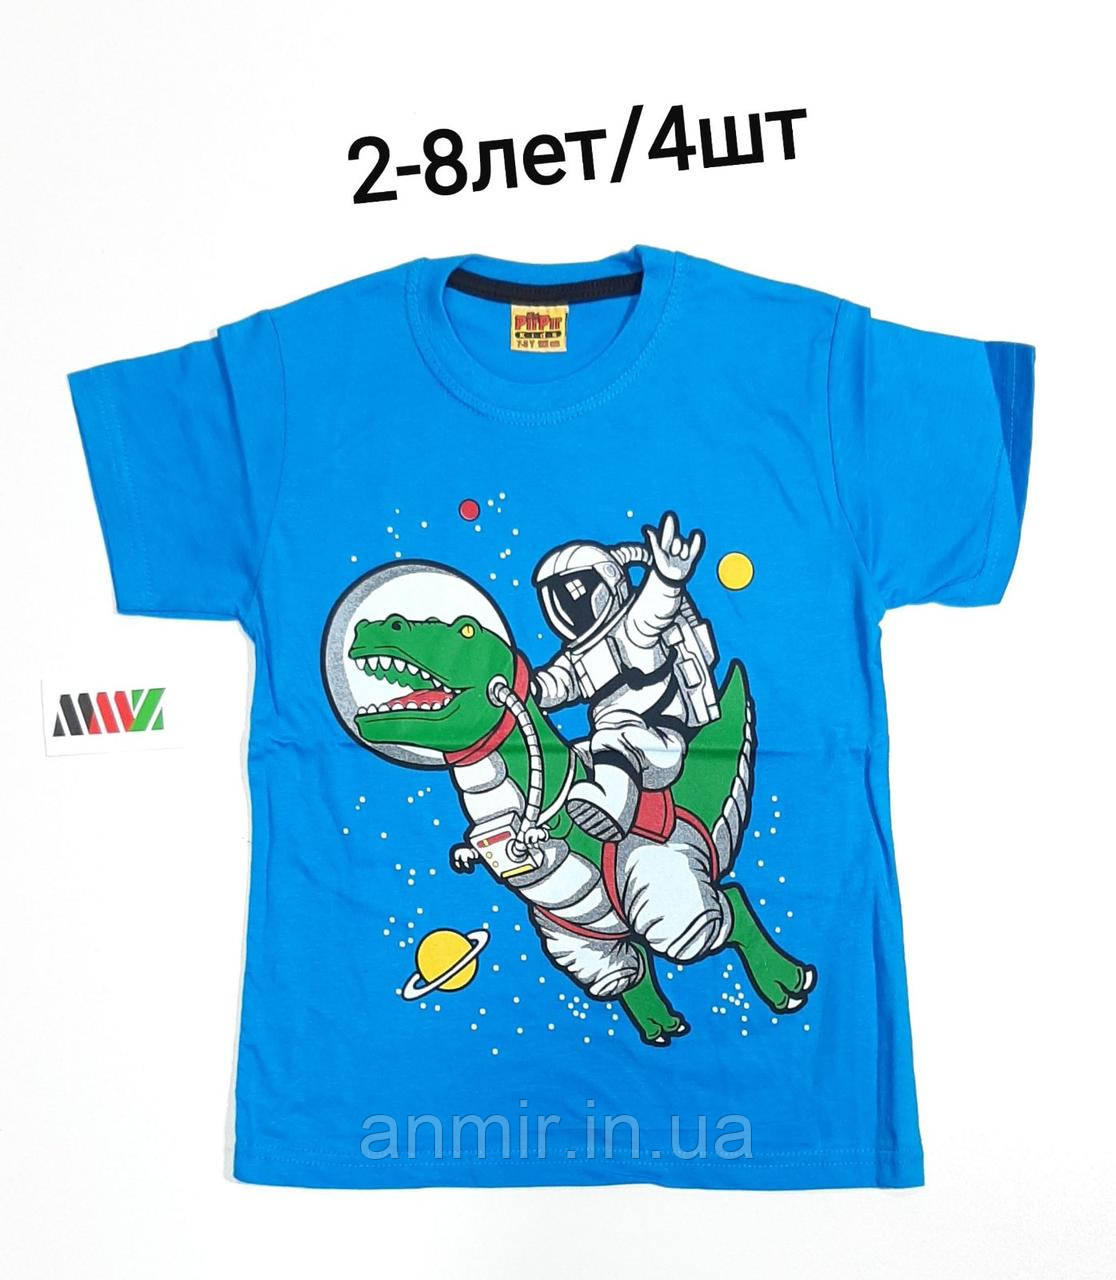 Дитяча трикотажна футболка для хлопчика Космос розмір 2-8 років, колір уточнюйте під час замовлення, фото 1